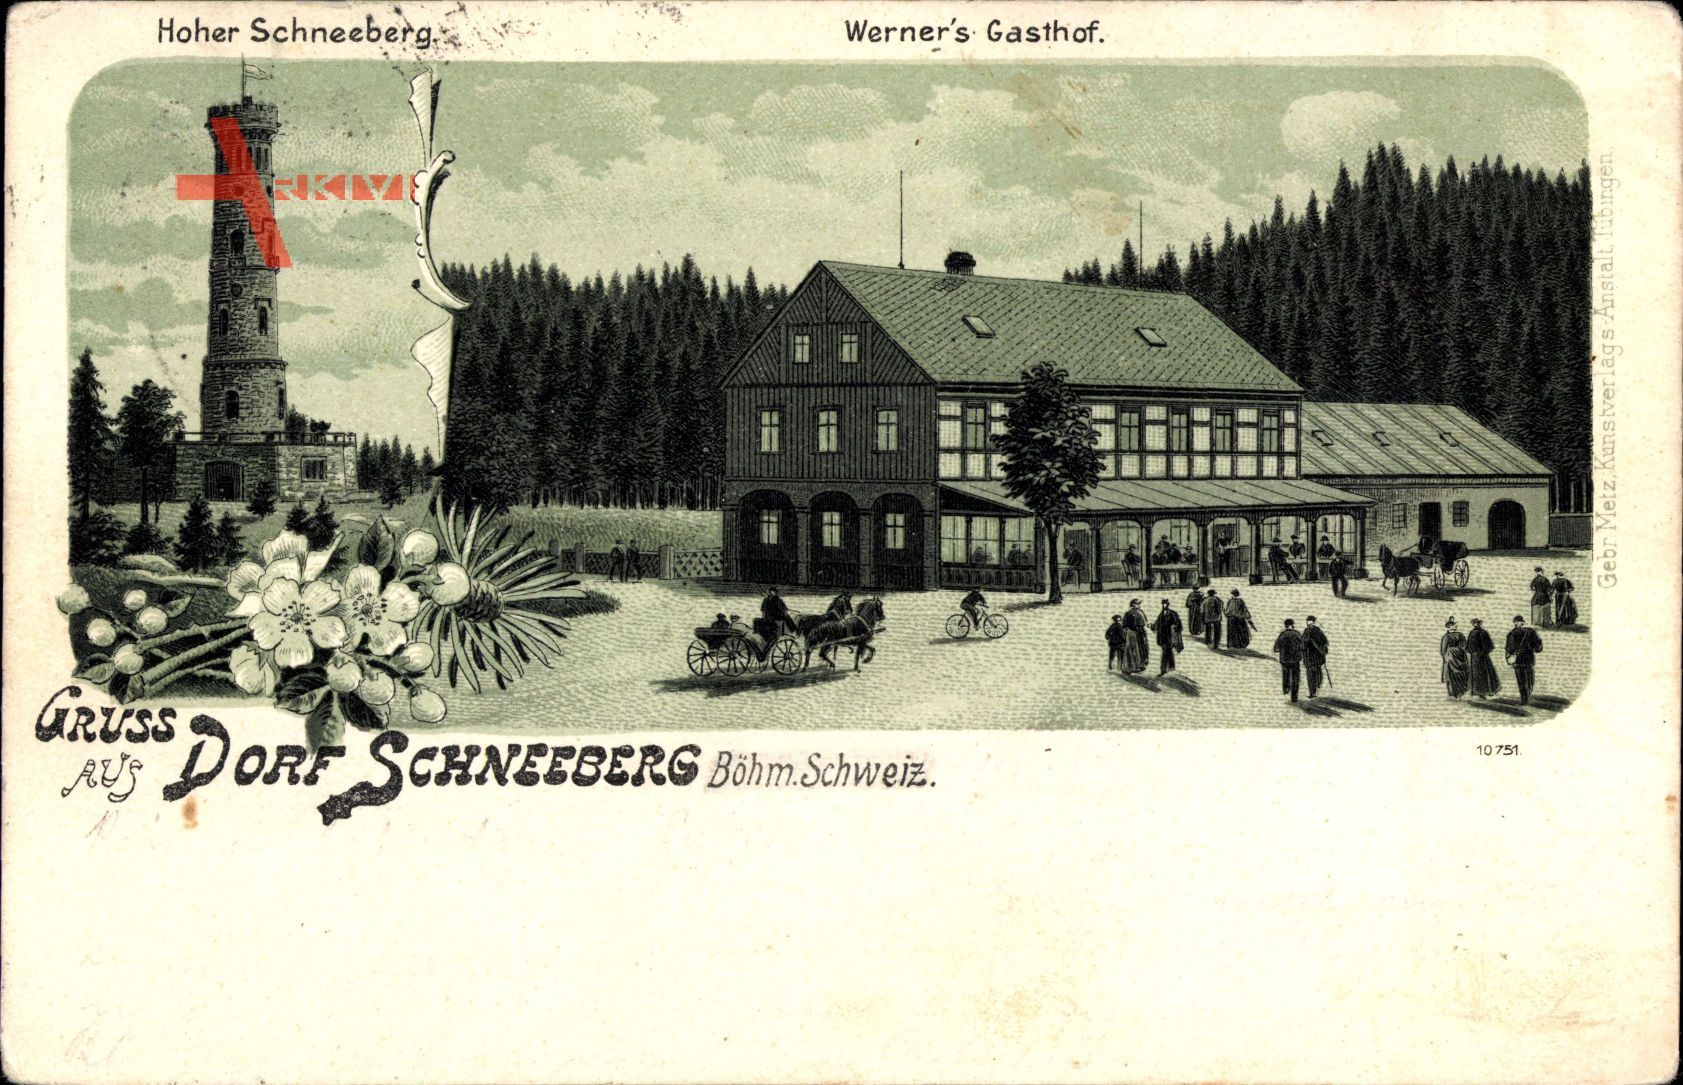 Sněžník Dorf Schneeberg Region Aussig, Werner's Gasthof, Hoher Schneeberg